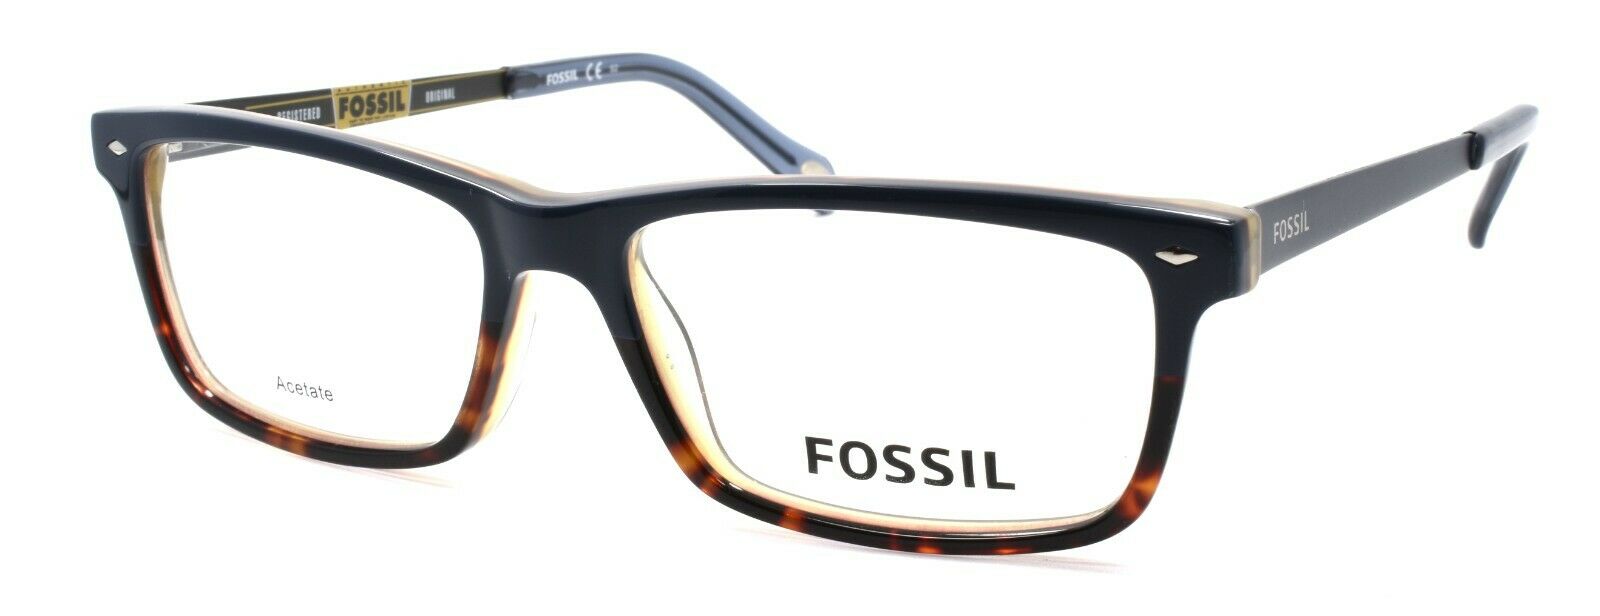 1-Fossil FOS 6032 UHD Men's Eyeglasses Frames 54-16-145 Blue / Havana + CASE-716737651841-IKSpecs